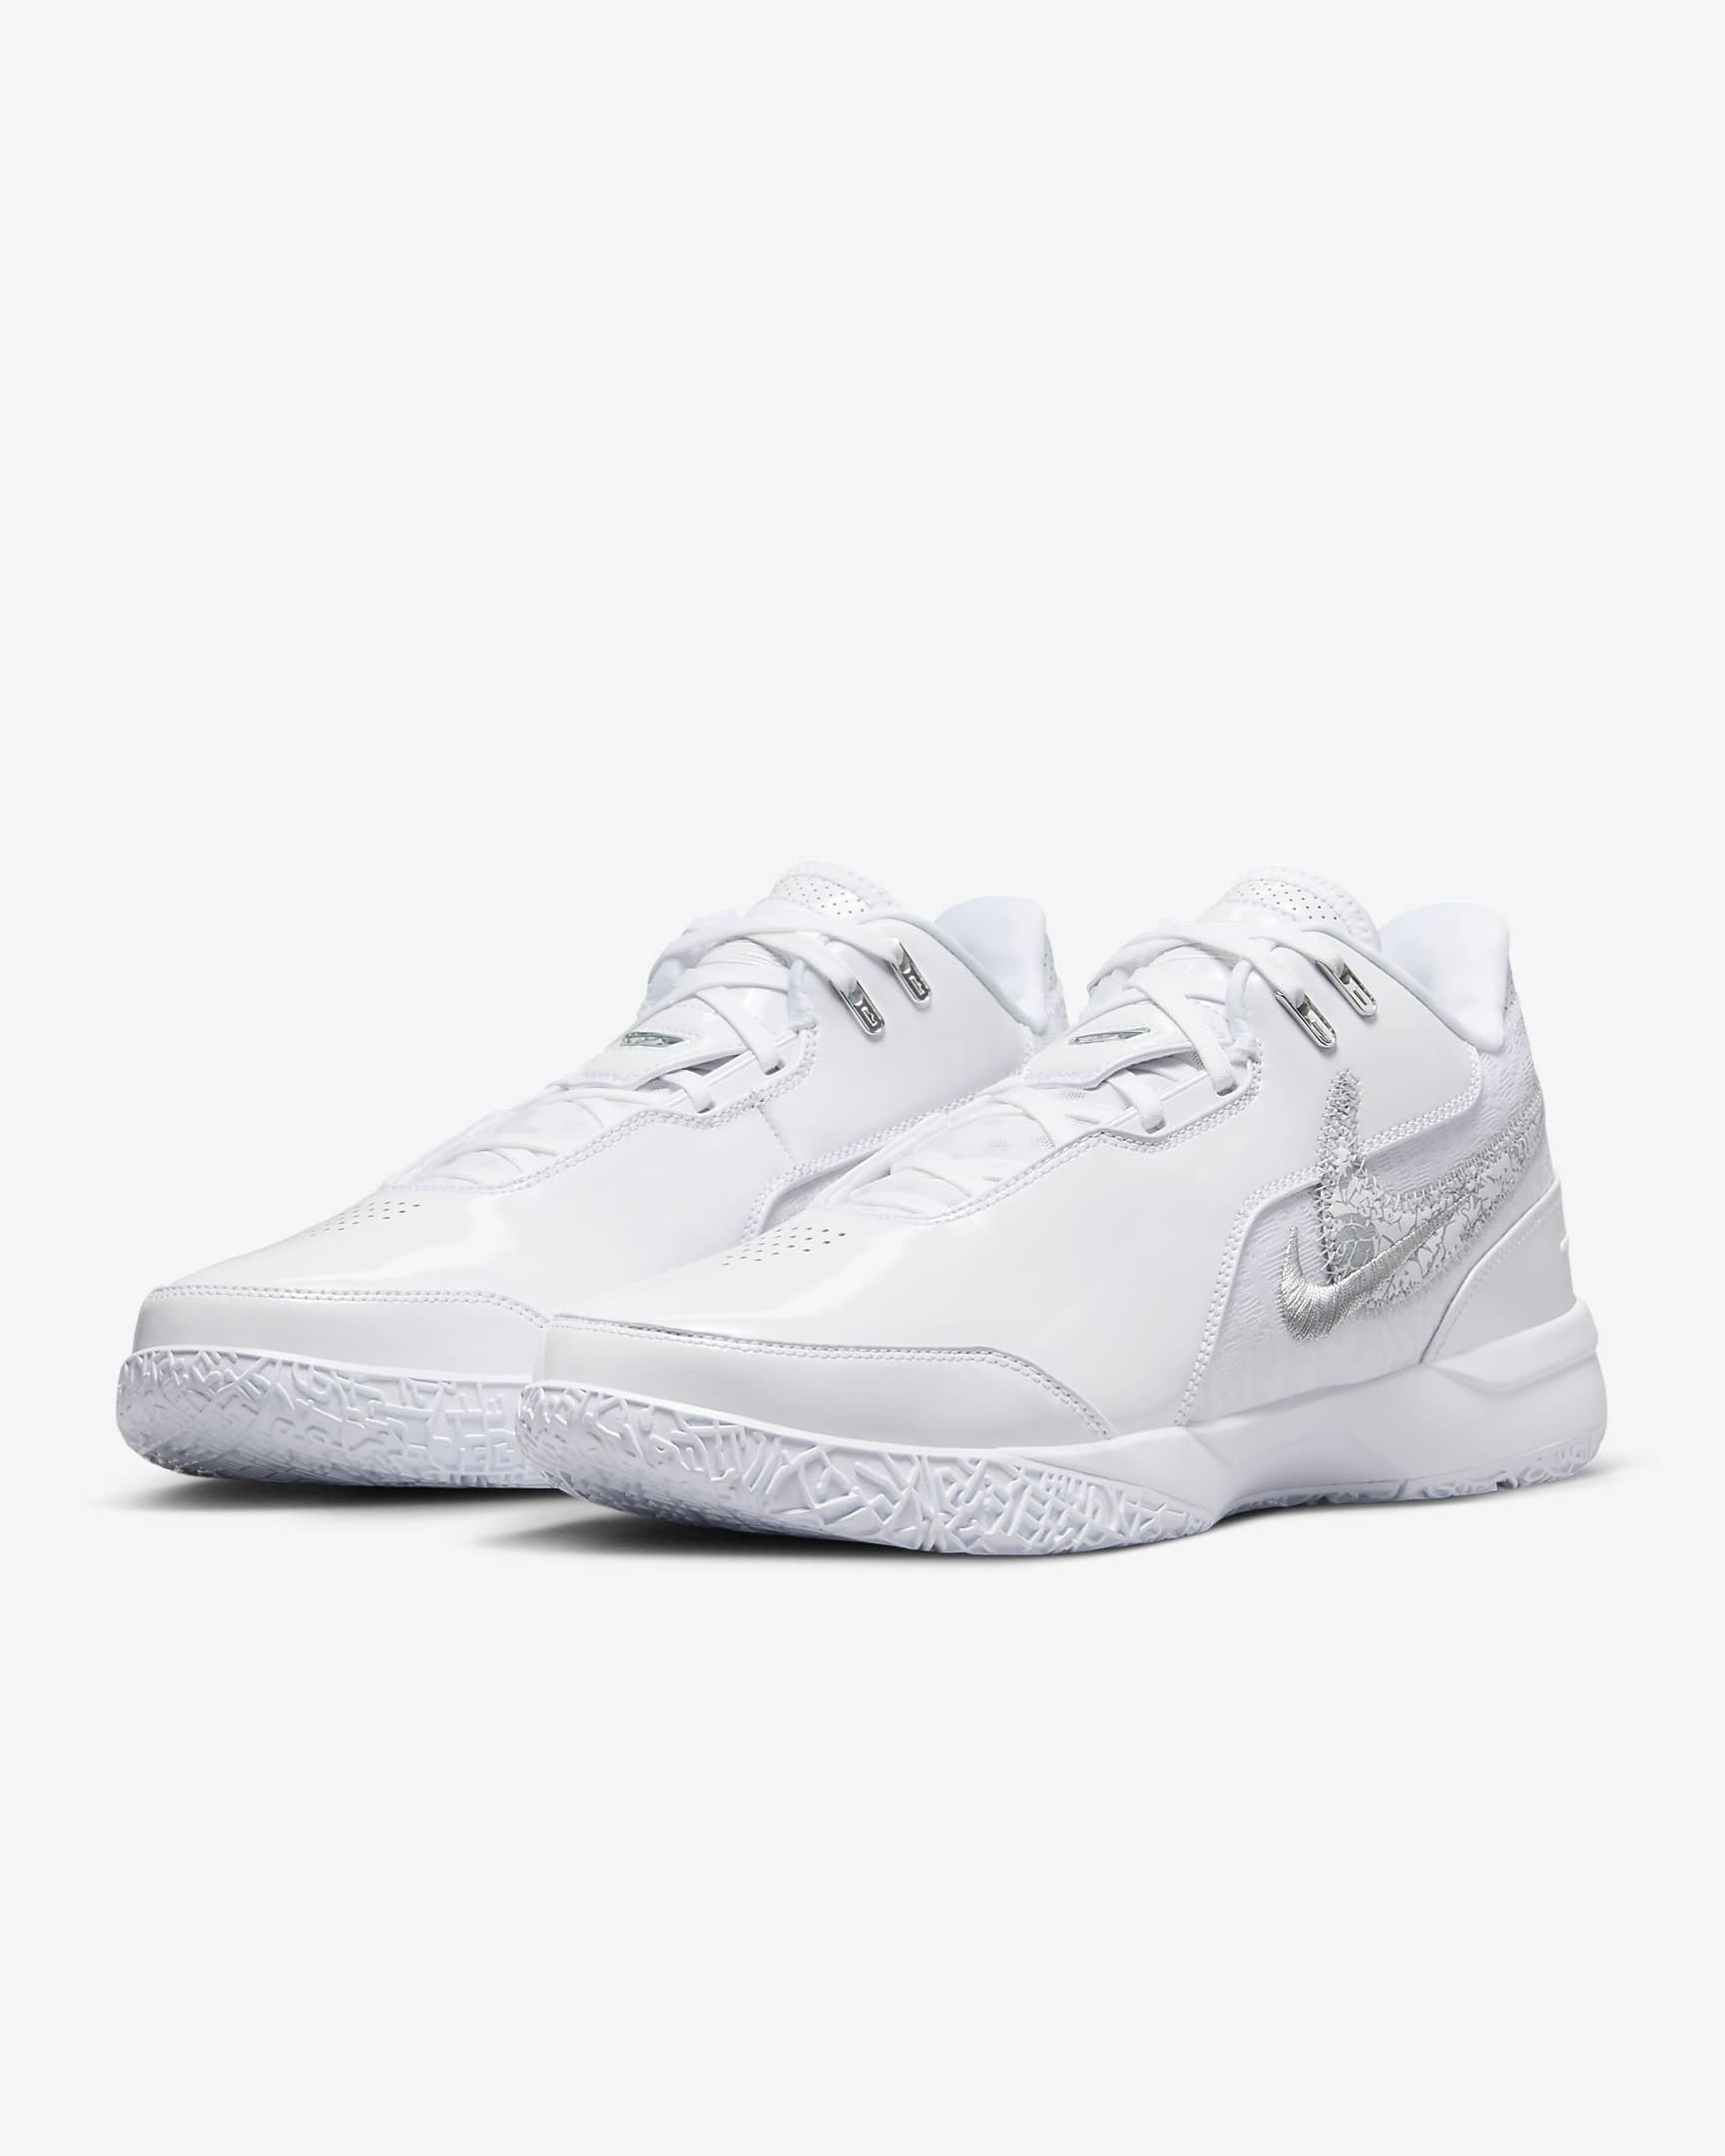 LeBron NXXT Gen AMPD Basketball Shoes - White/Metallic Silver/Light Smoke Grey